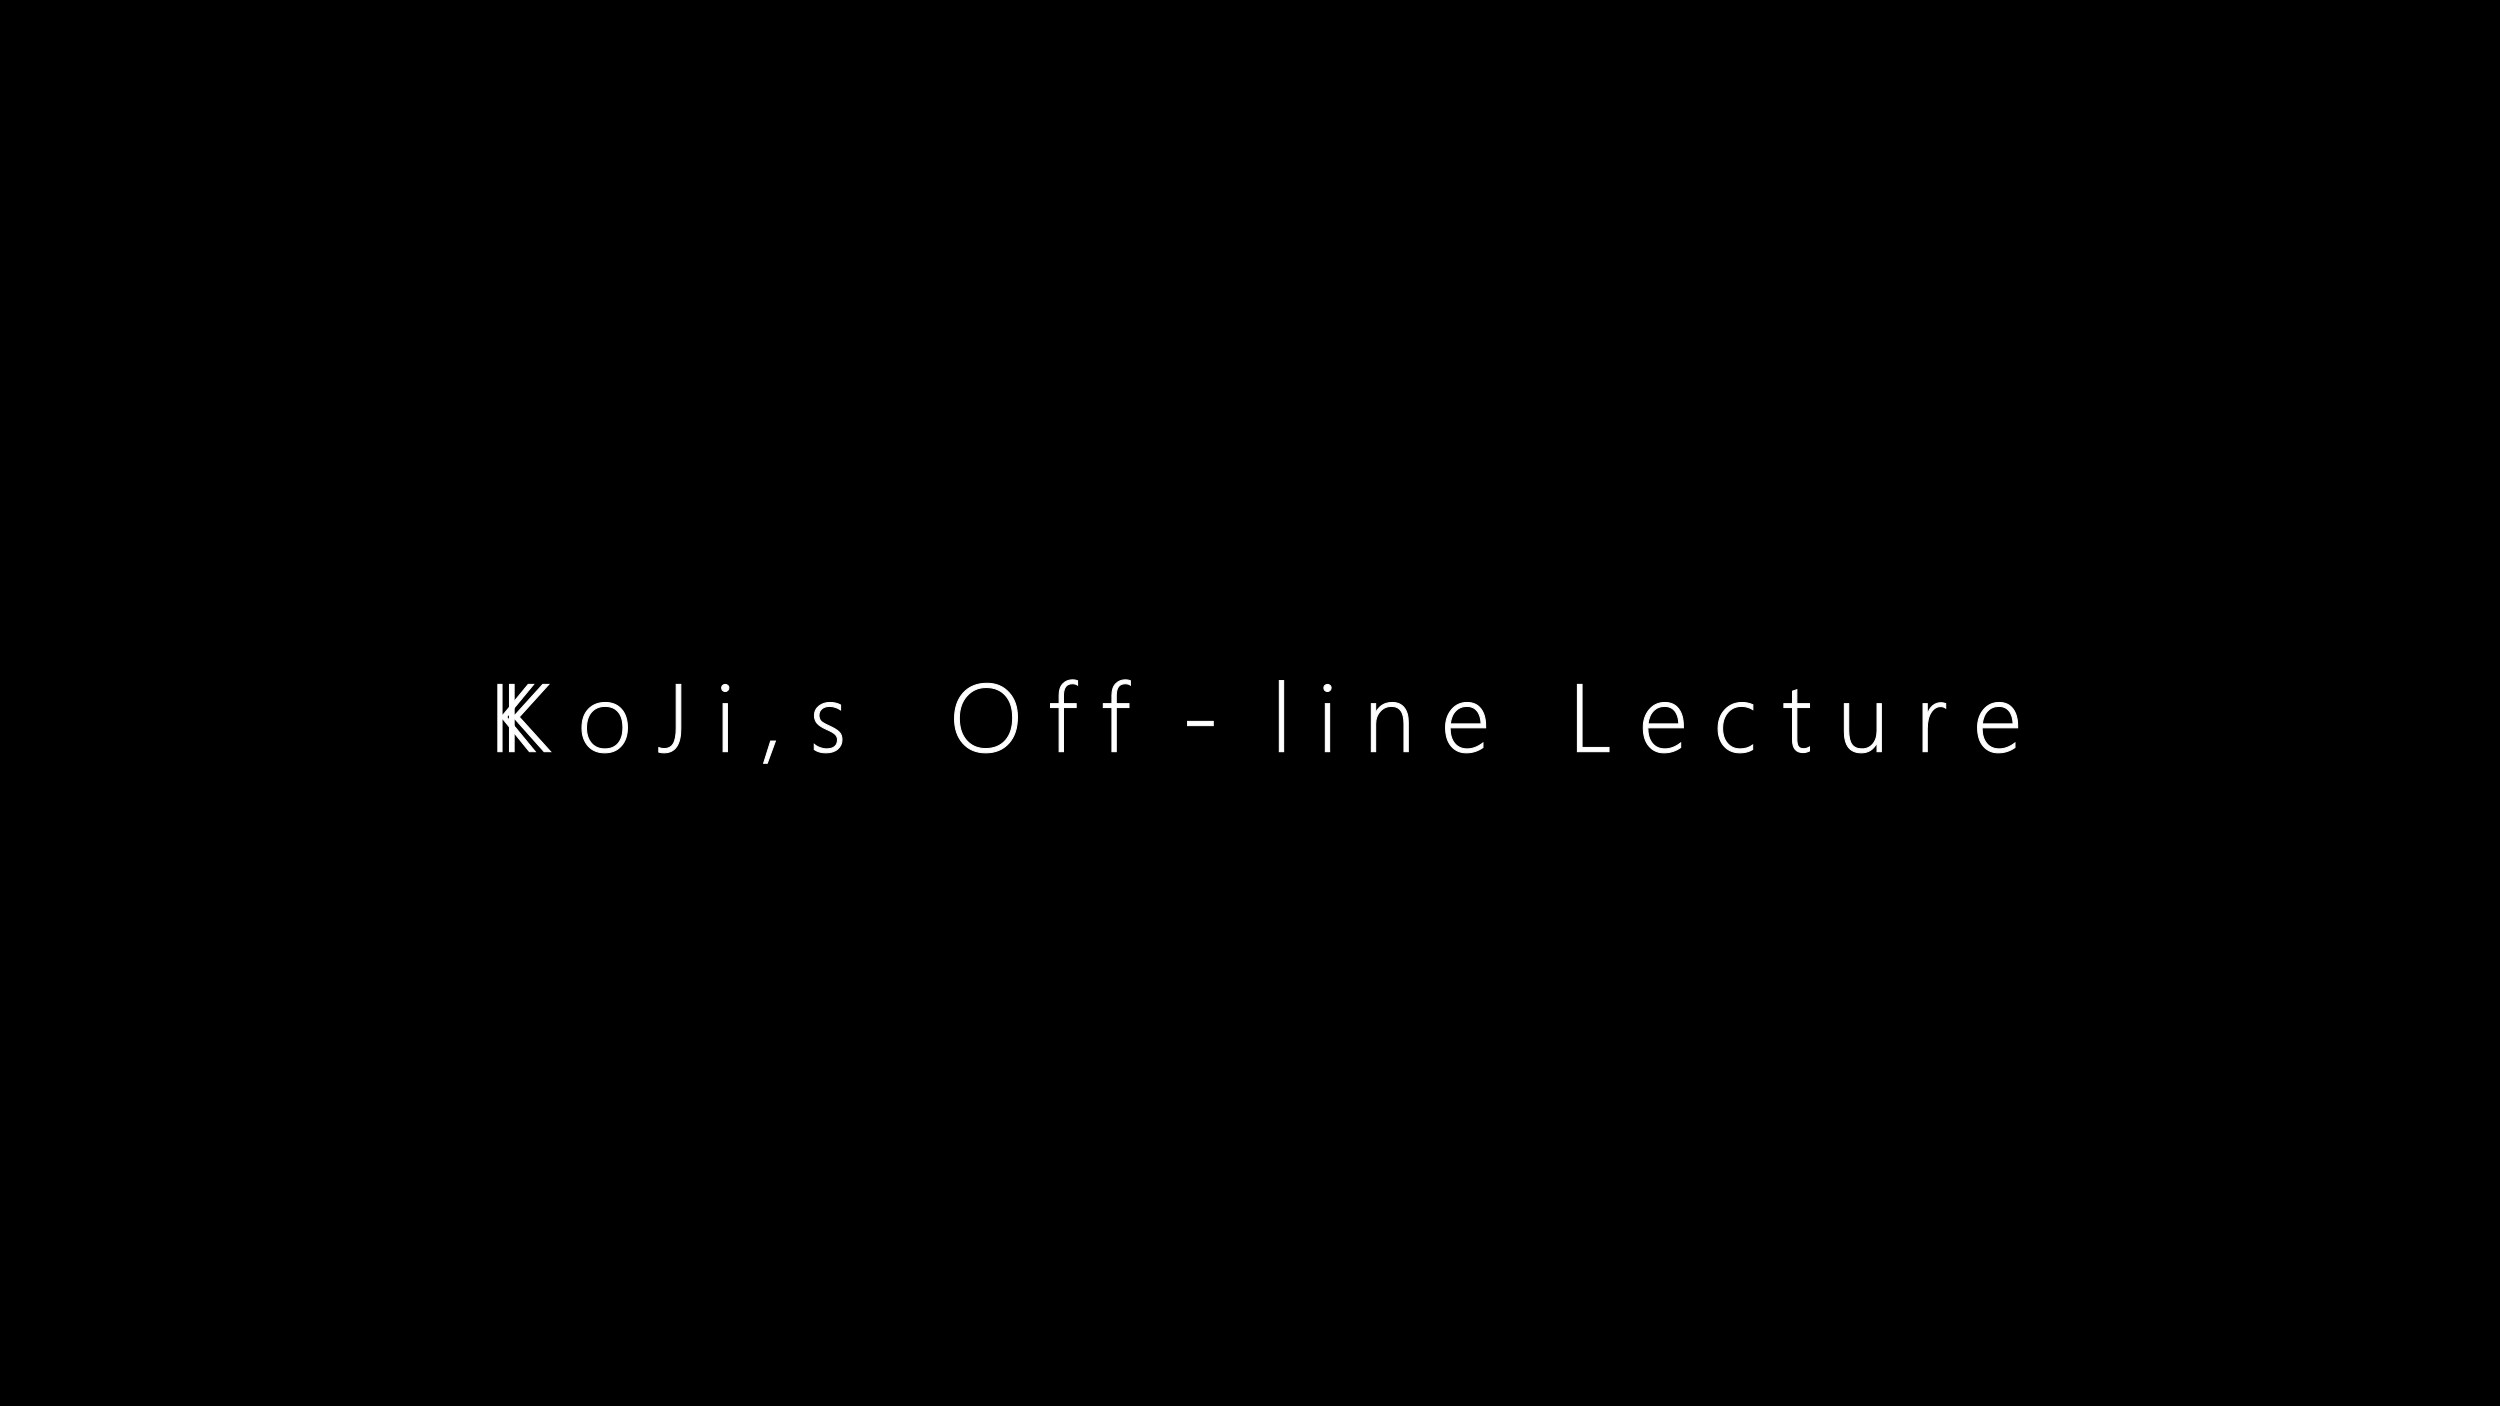 KoJi,s Off-line Lecture